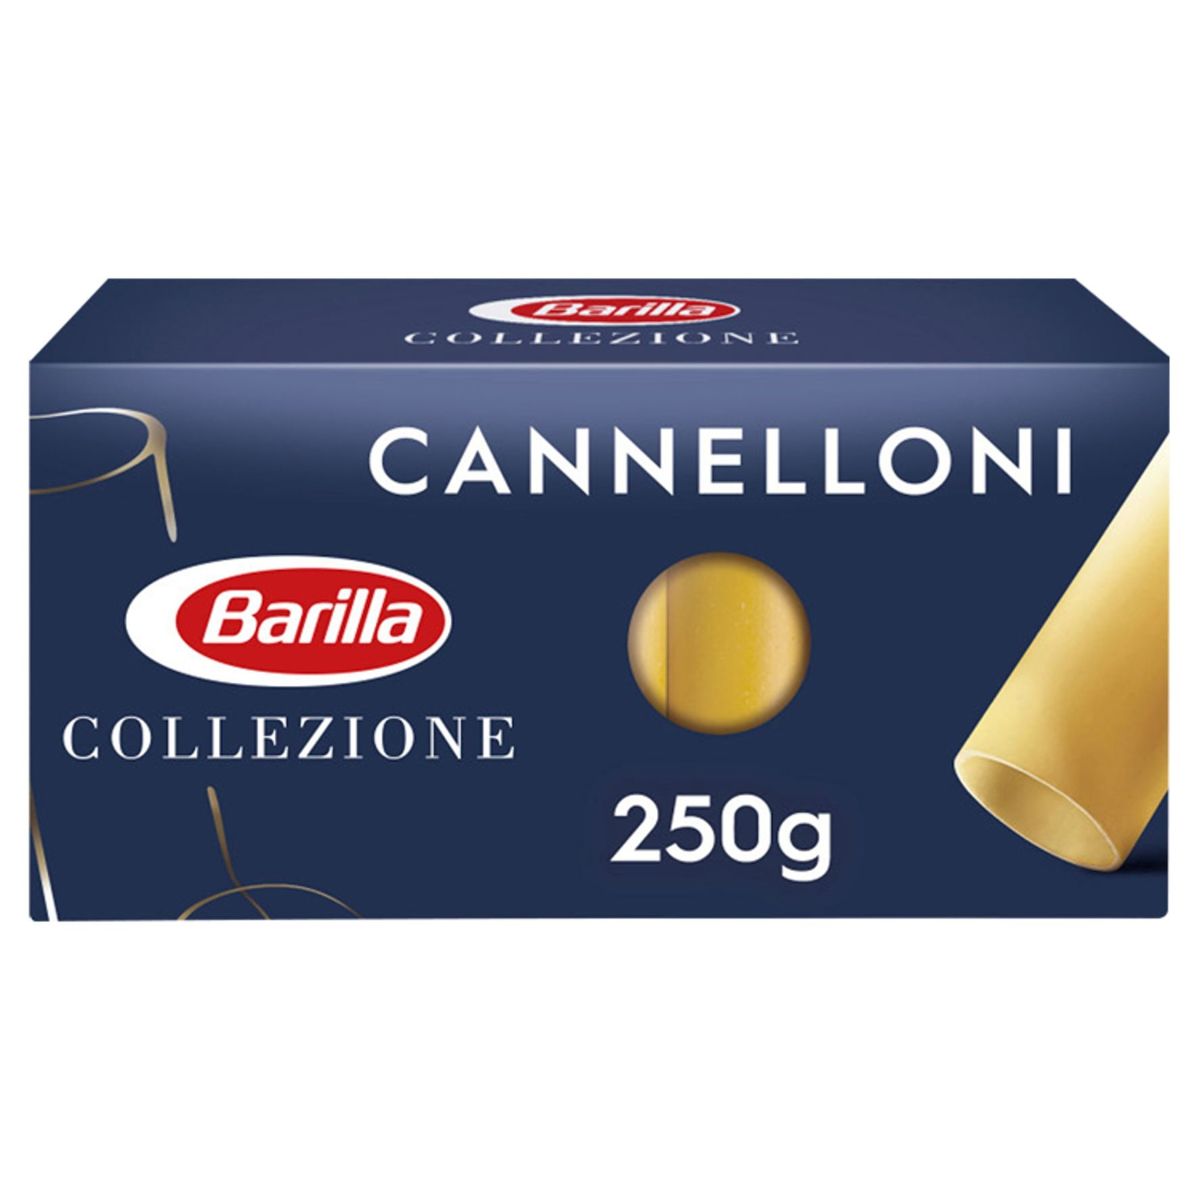 Barilla Cannelloni Collezione 250 g